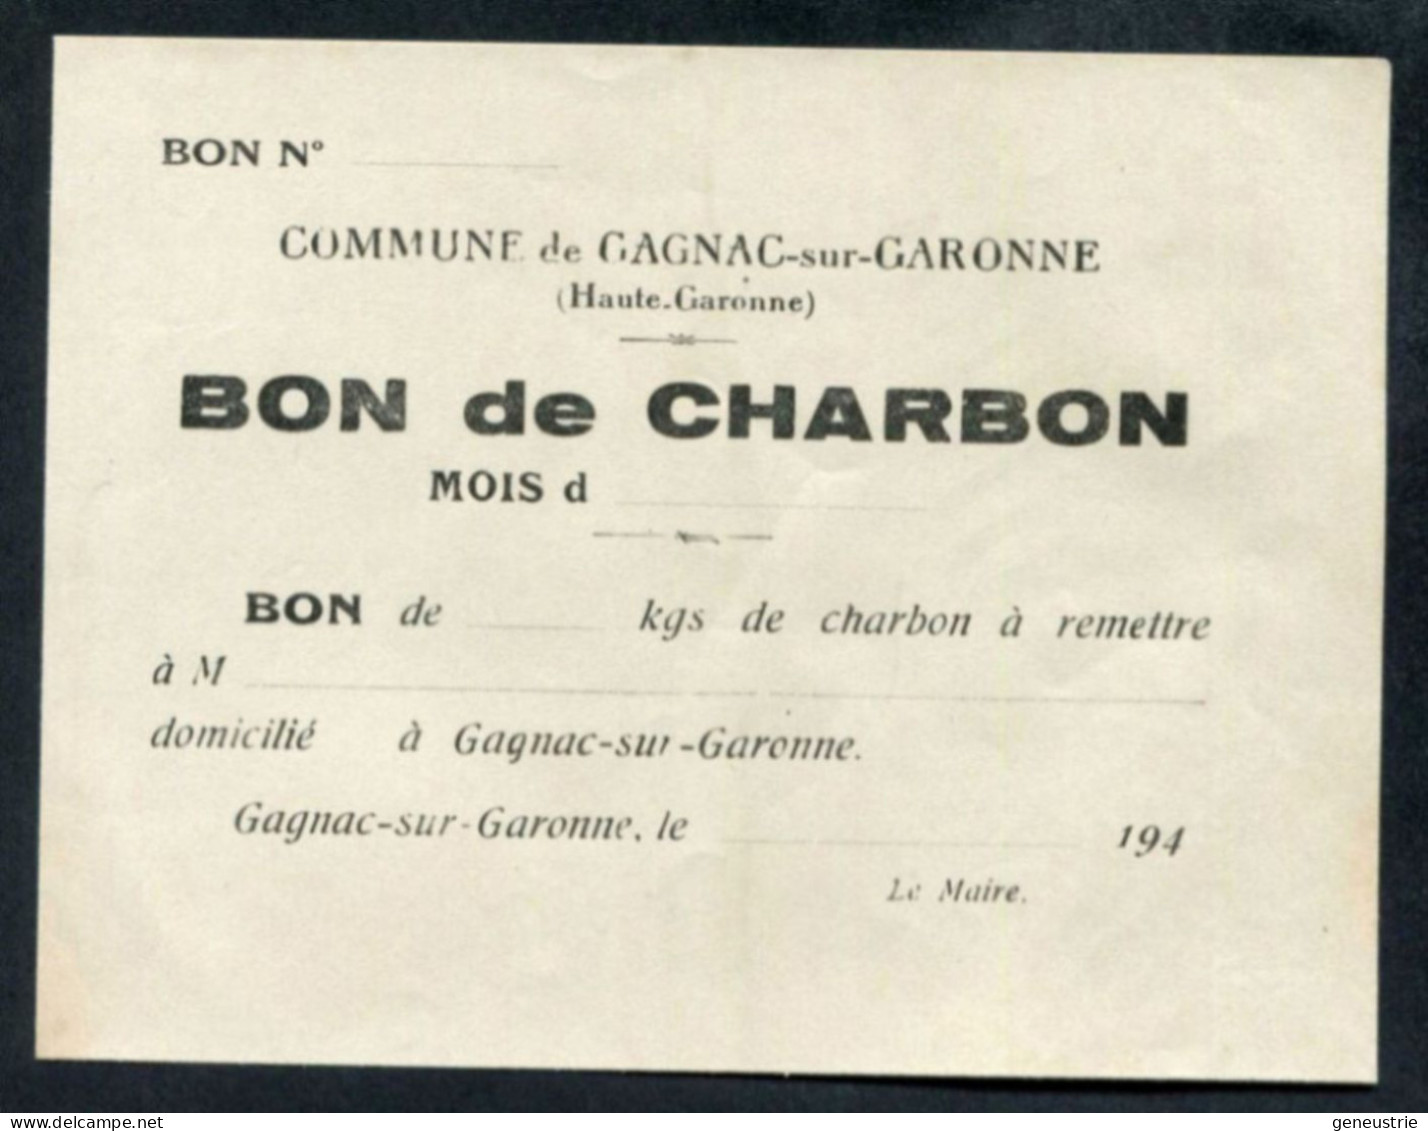 WW2 Billet De Nécessité "Bon De ... Kg De Charbon - Gagnac-sur-Garonne (Toulouse) Années 40" WWII - Bons & Nécessité